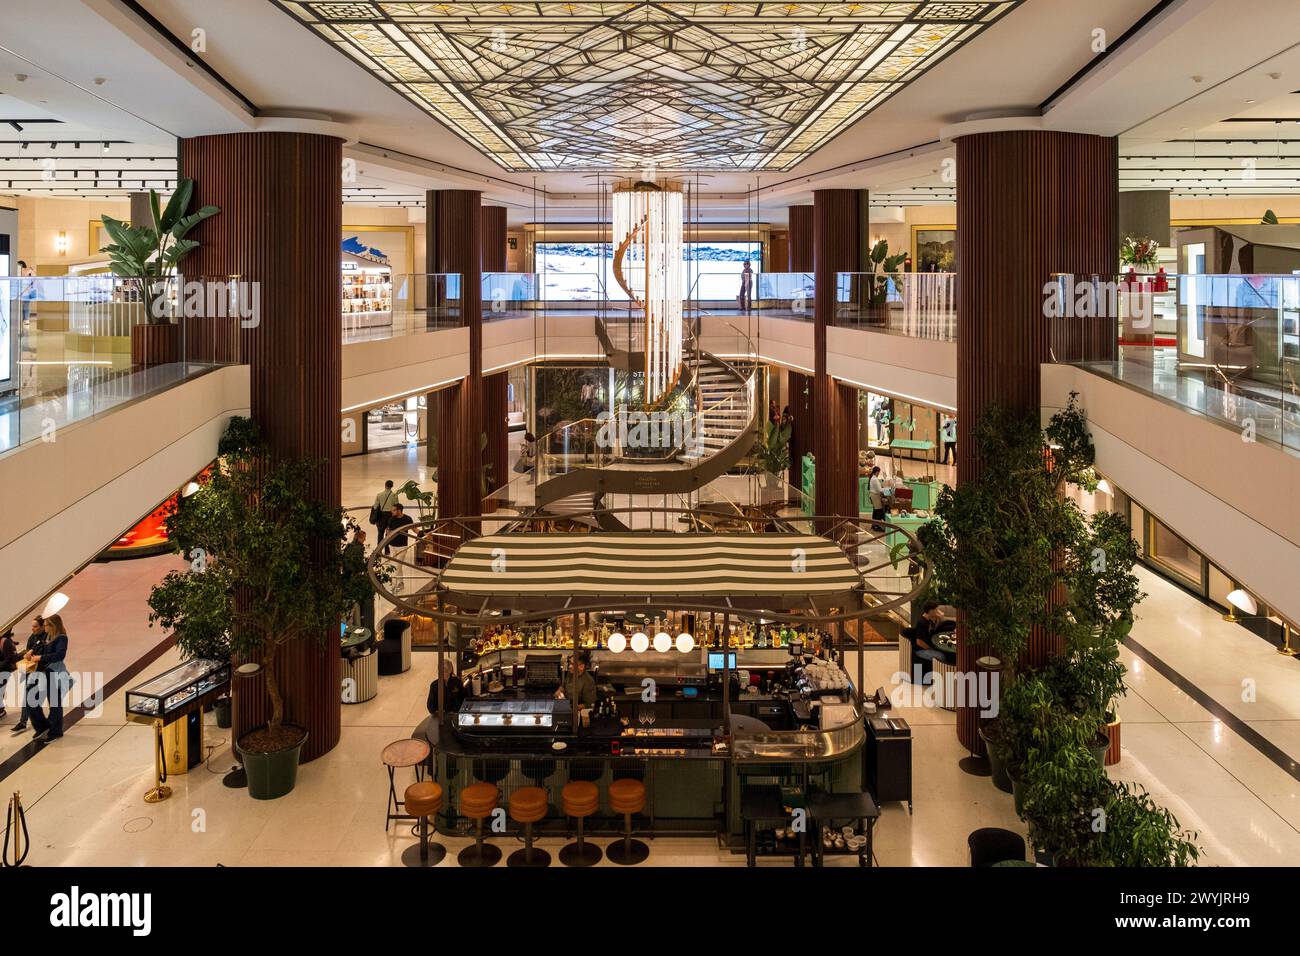 Spanien, Madrid, Galeria Canalejas, Einkaufszentrum ganz dem Luxus gewidmet Stockfoto